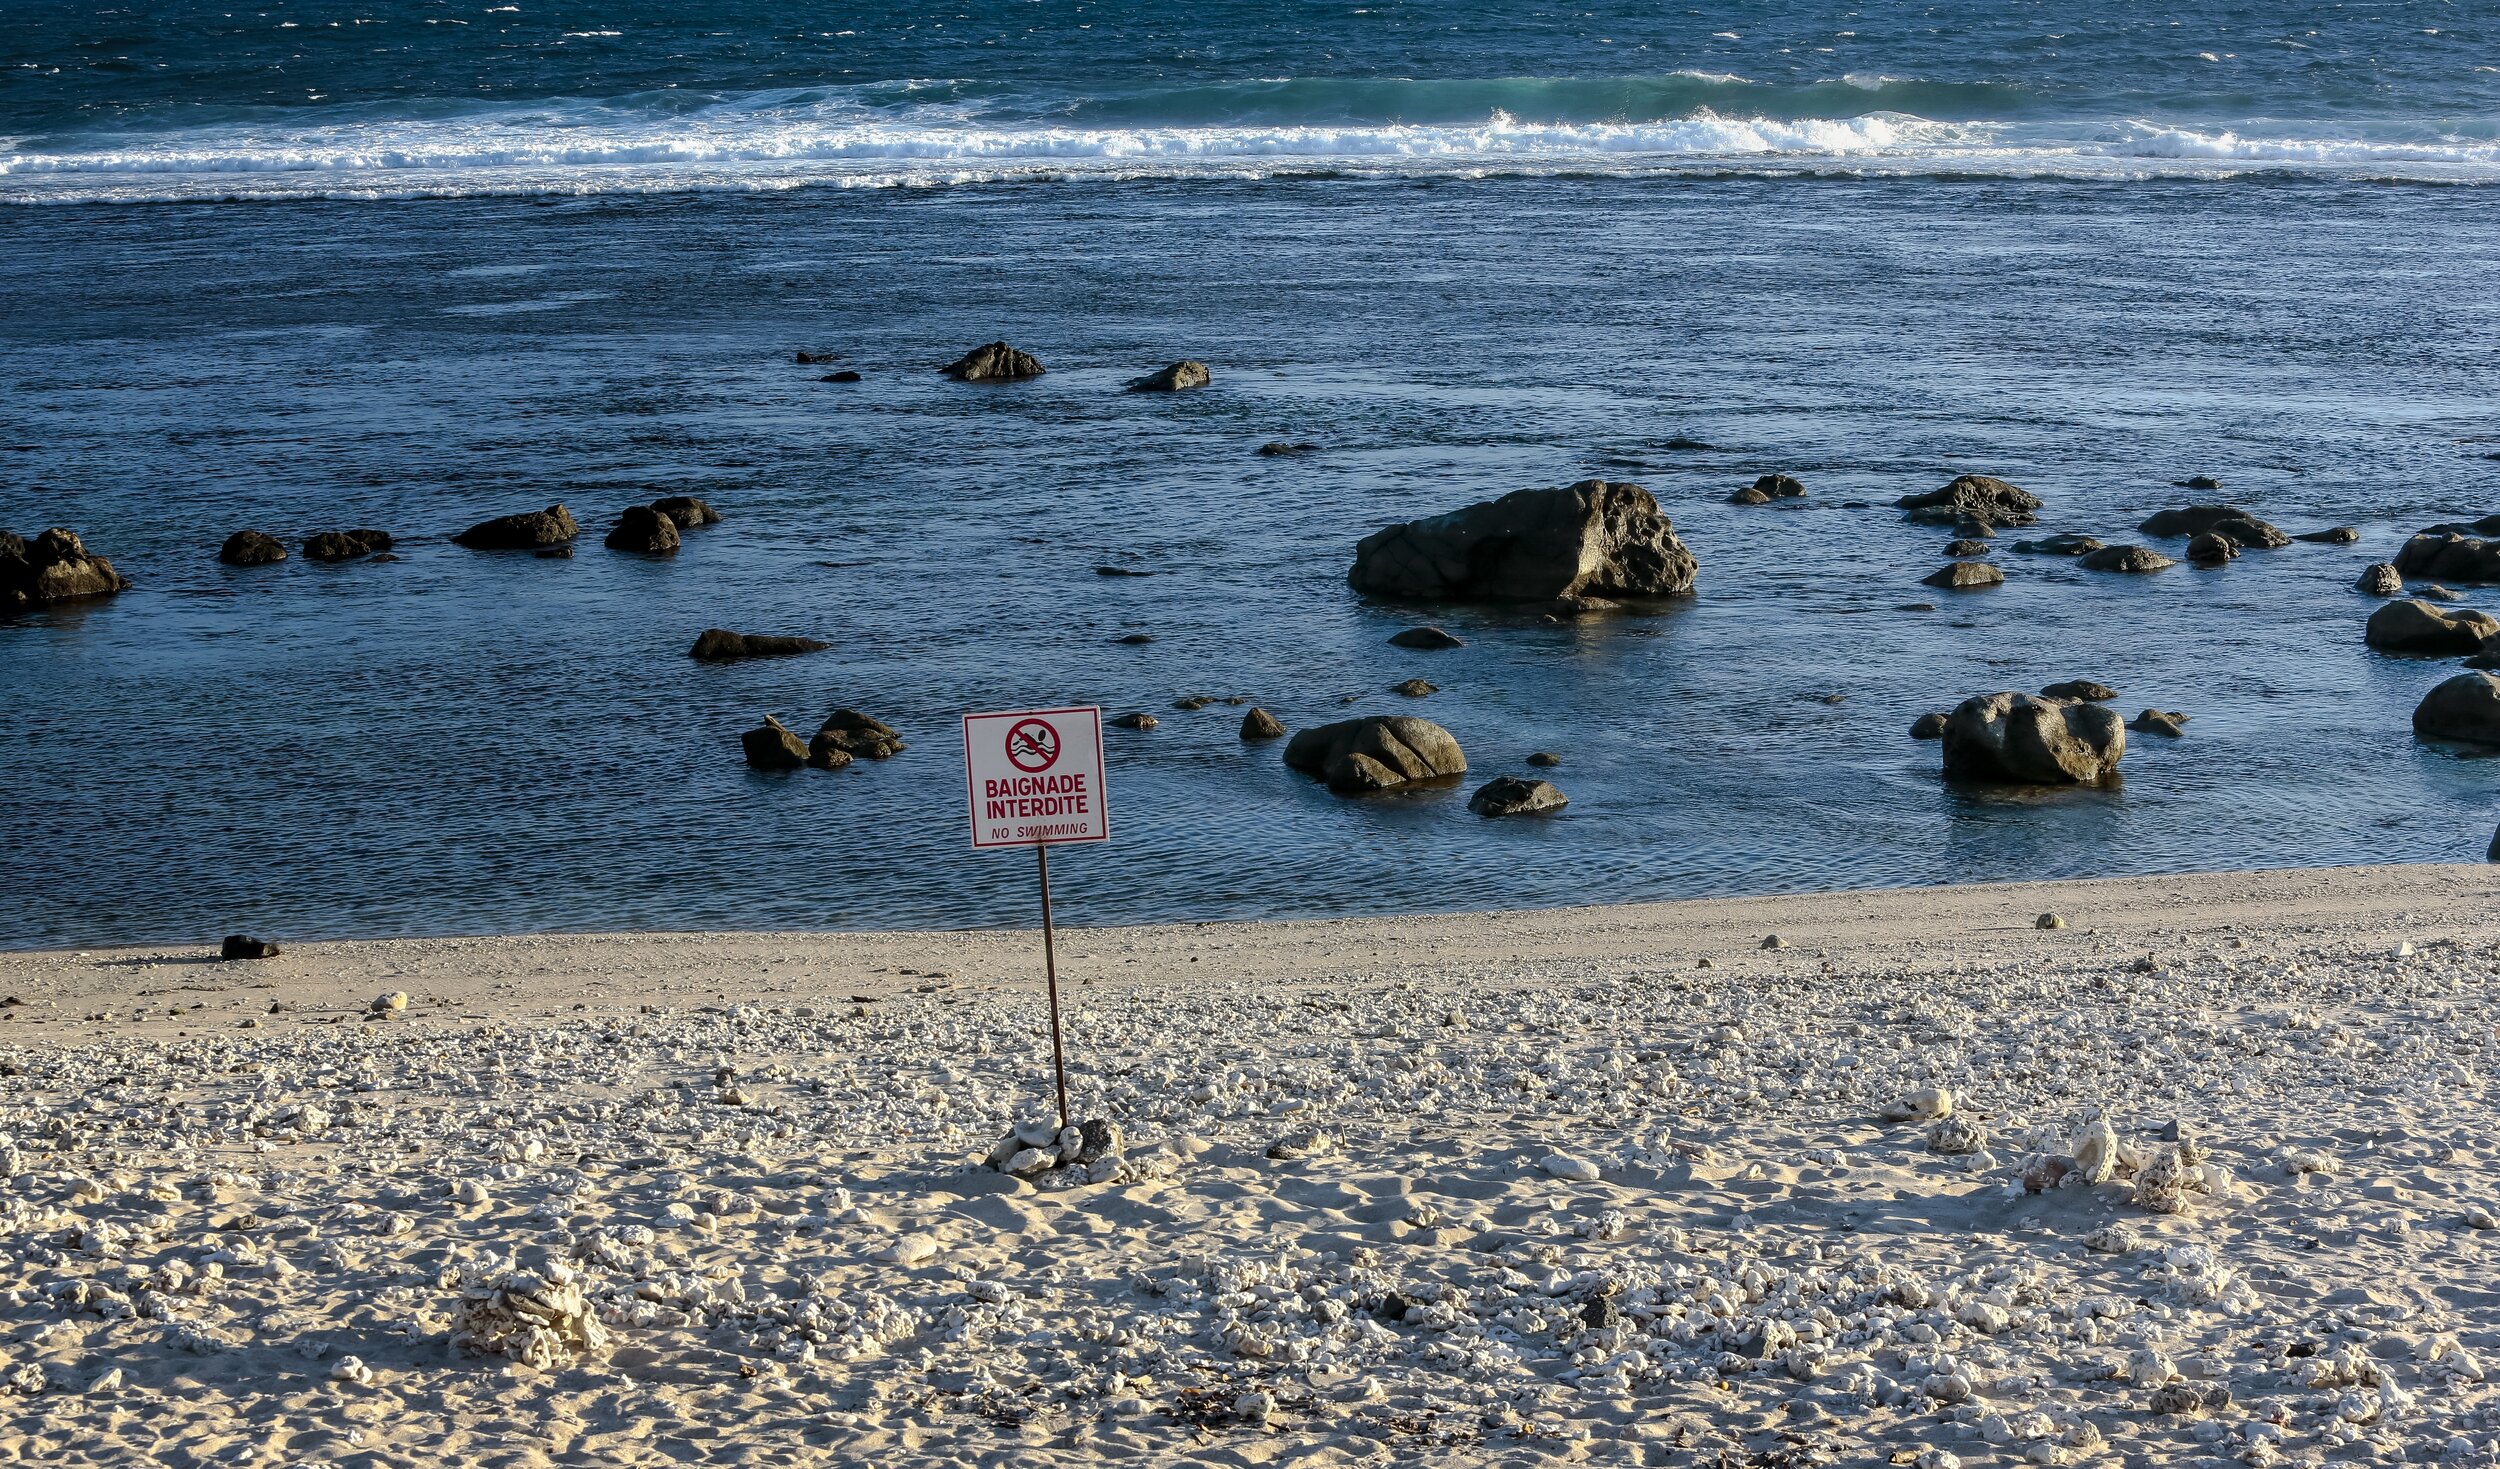    “Baignade interdite” la plage de Saint-Pierre désertée en période de confinement.  © Le Cahier Perturbé  